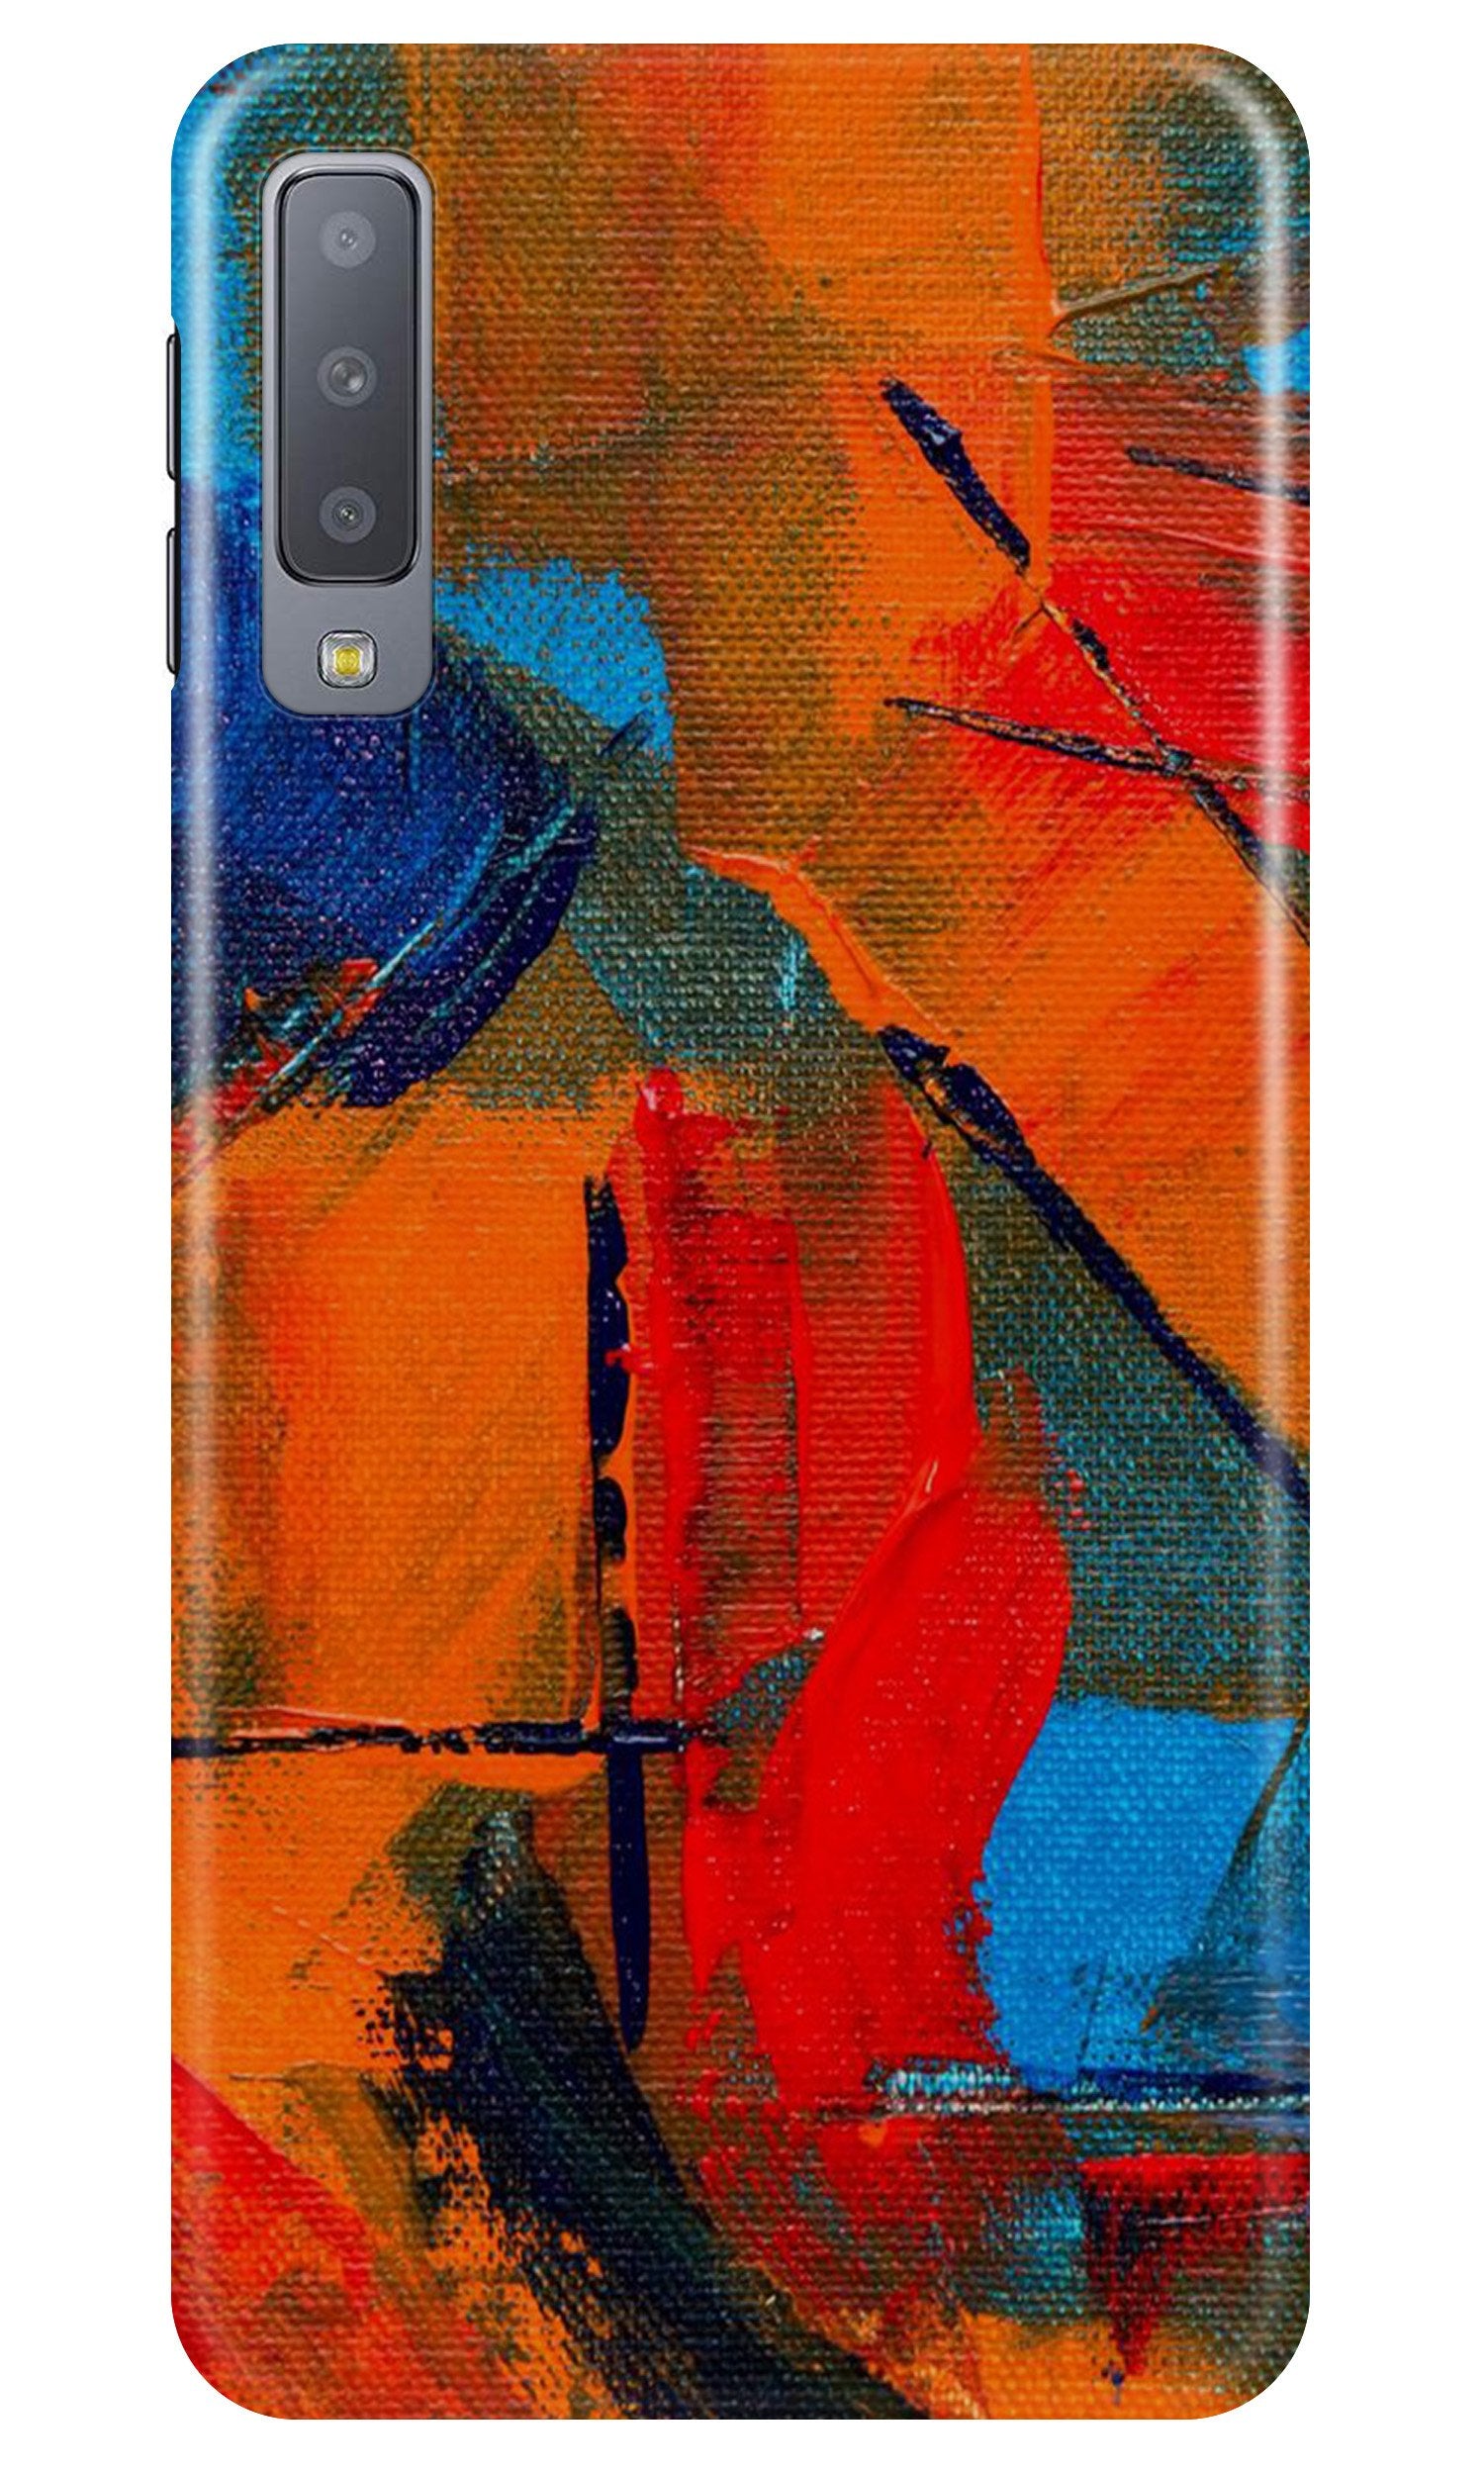 Modern Art Case for Samung Galaxy A70s (Design No. 237)